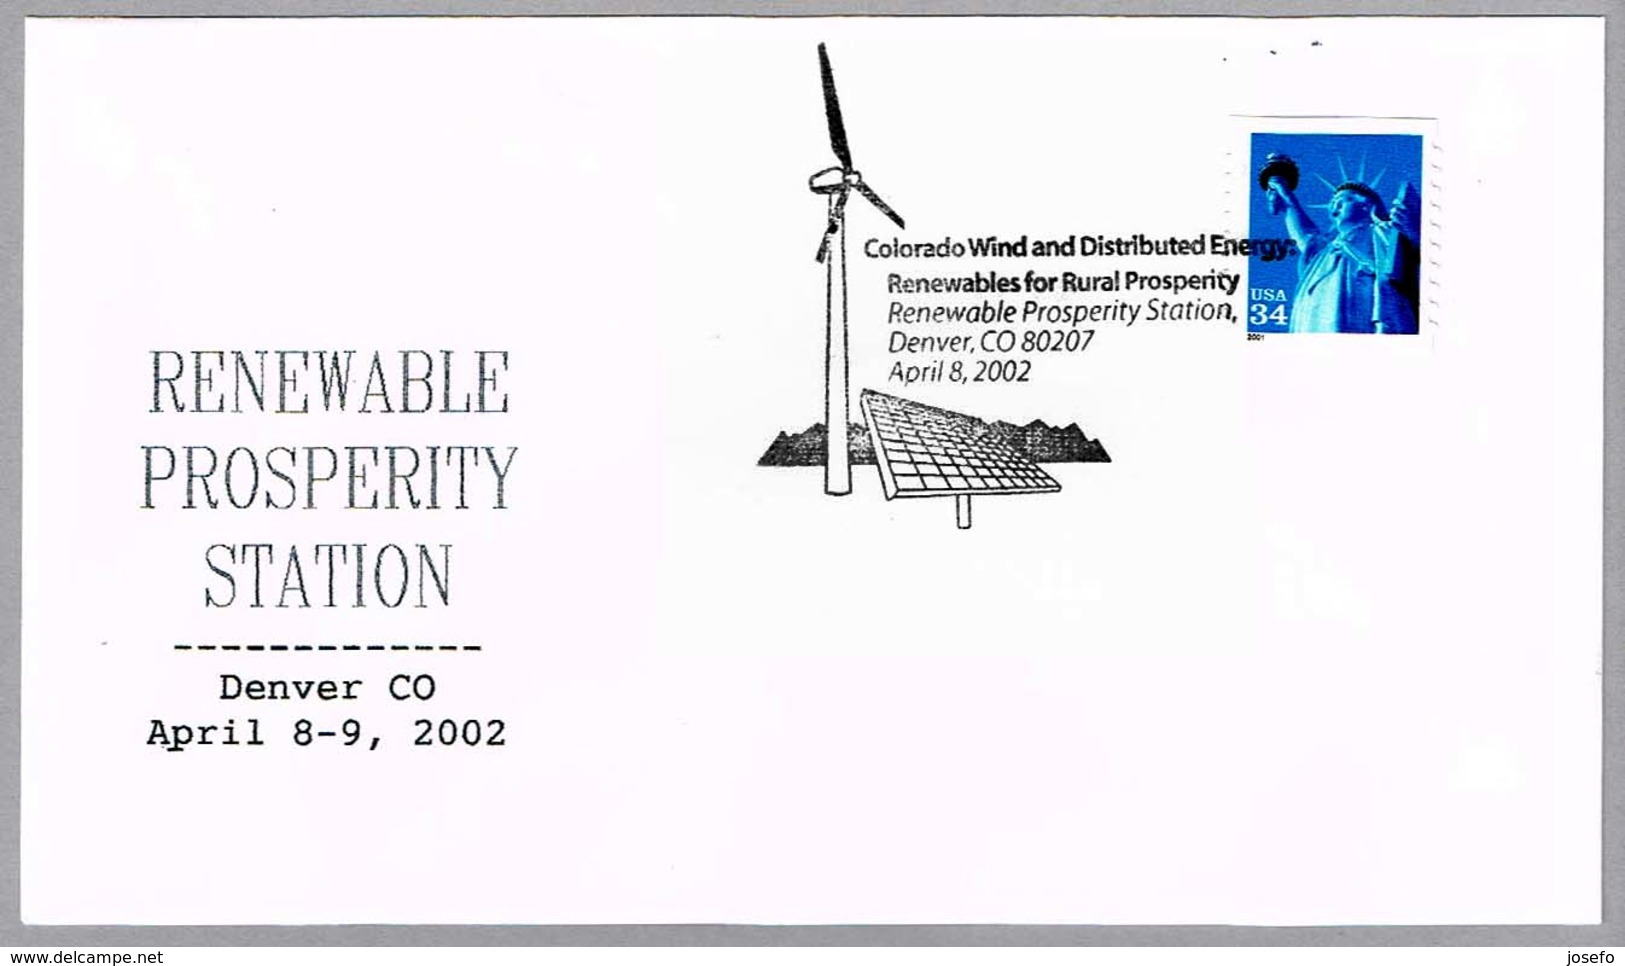 RENEWABLES ENERGIES FOR RURAL PROSPERITY. Energias Renovables. Denver CO. 2002 - Protección Del Medio Ambiente Y Del Clima